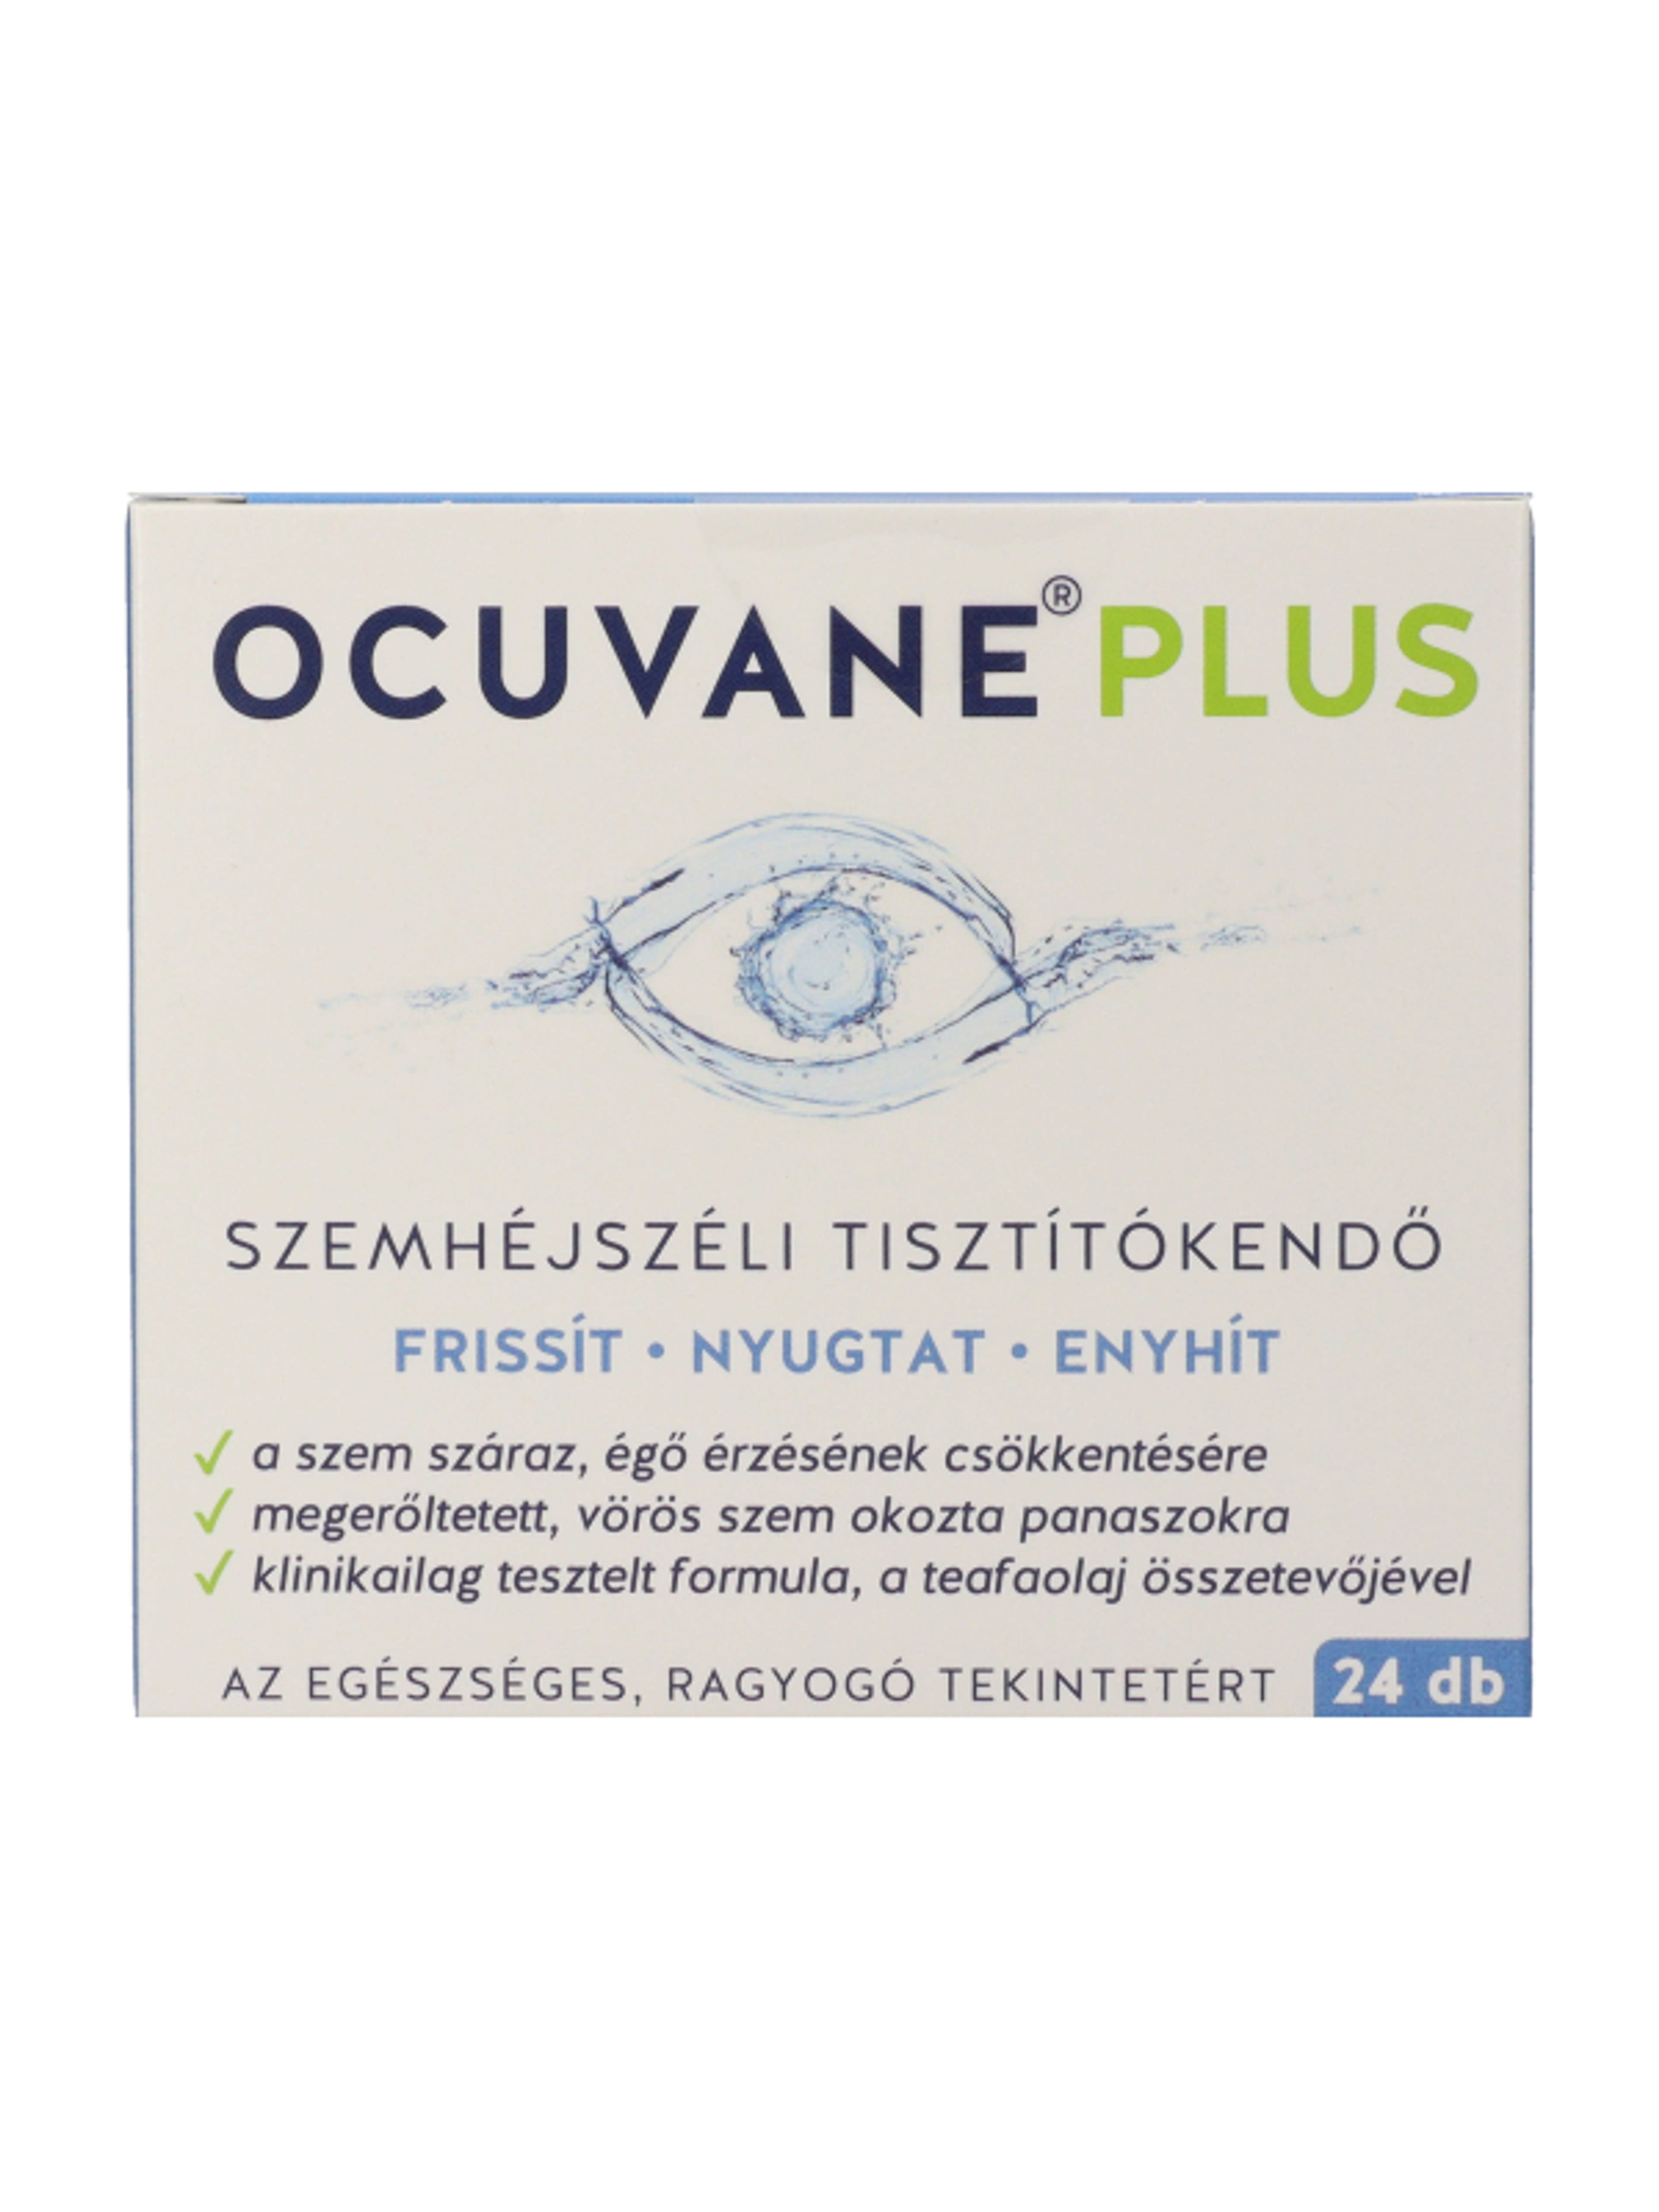 Ocuvane plus szemhéjszéli tisztítókendő - 24 db-2